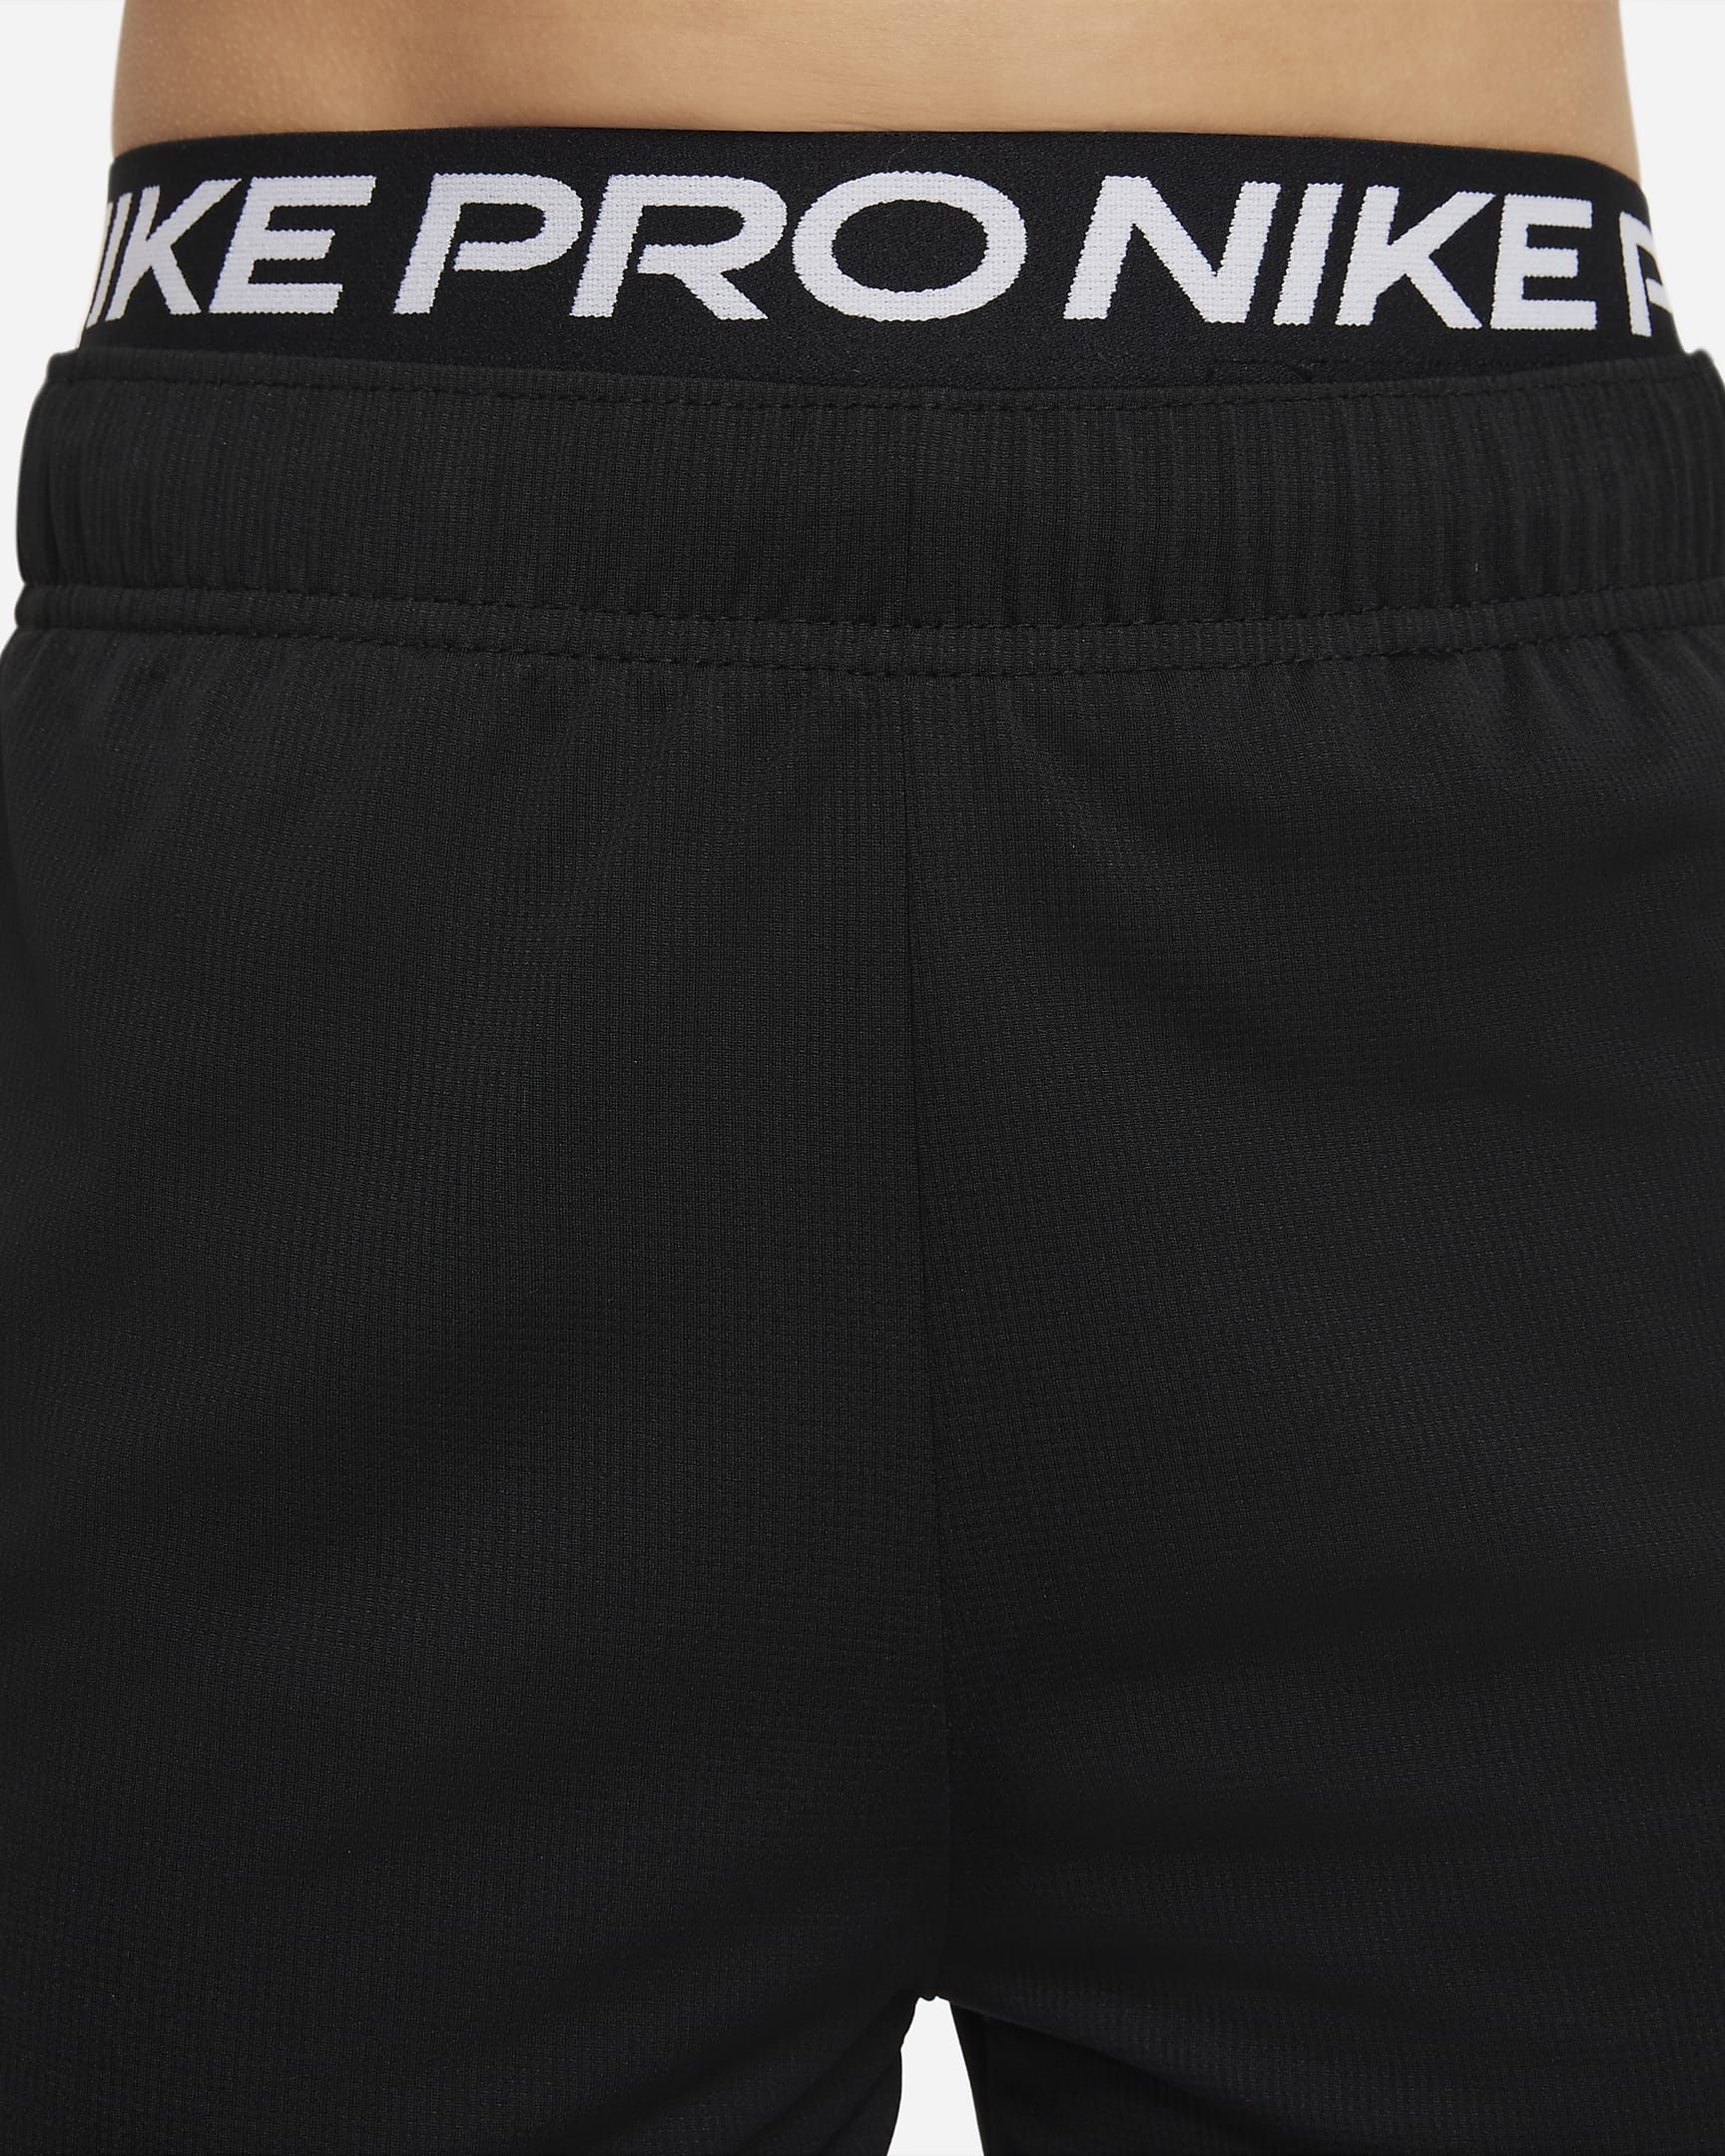 Nike Pro Dri-FIT Big Kids' (Boys') Tights. Nike.com